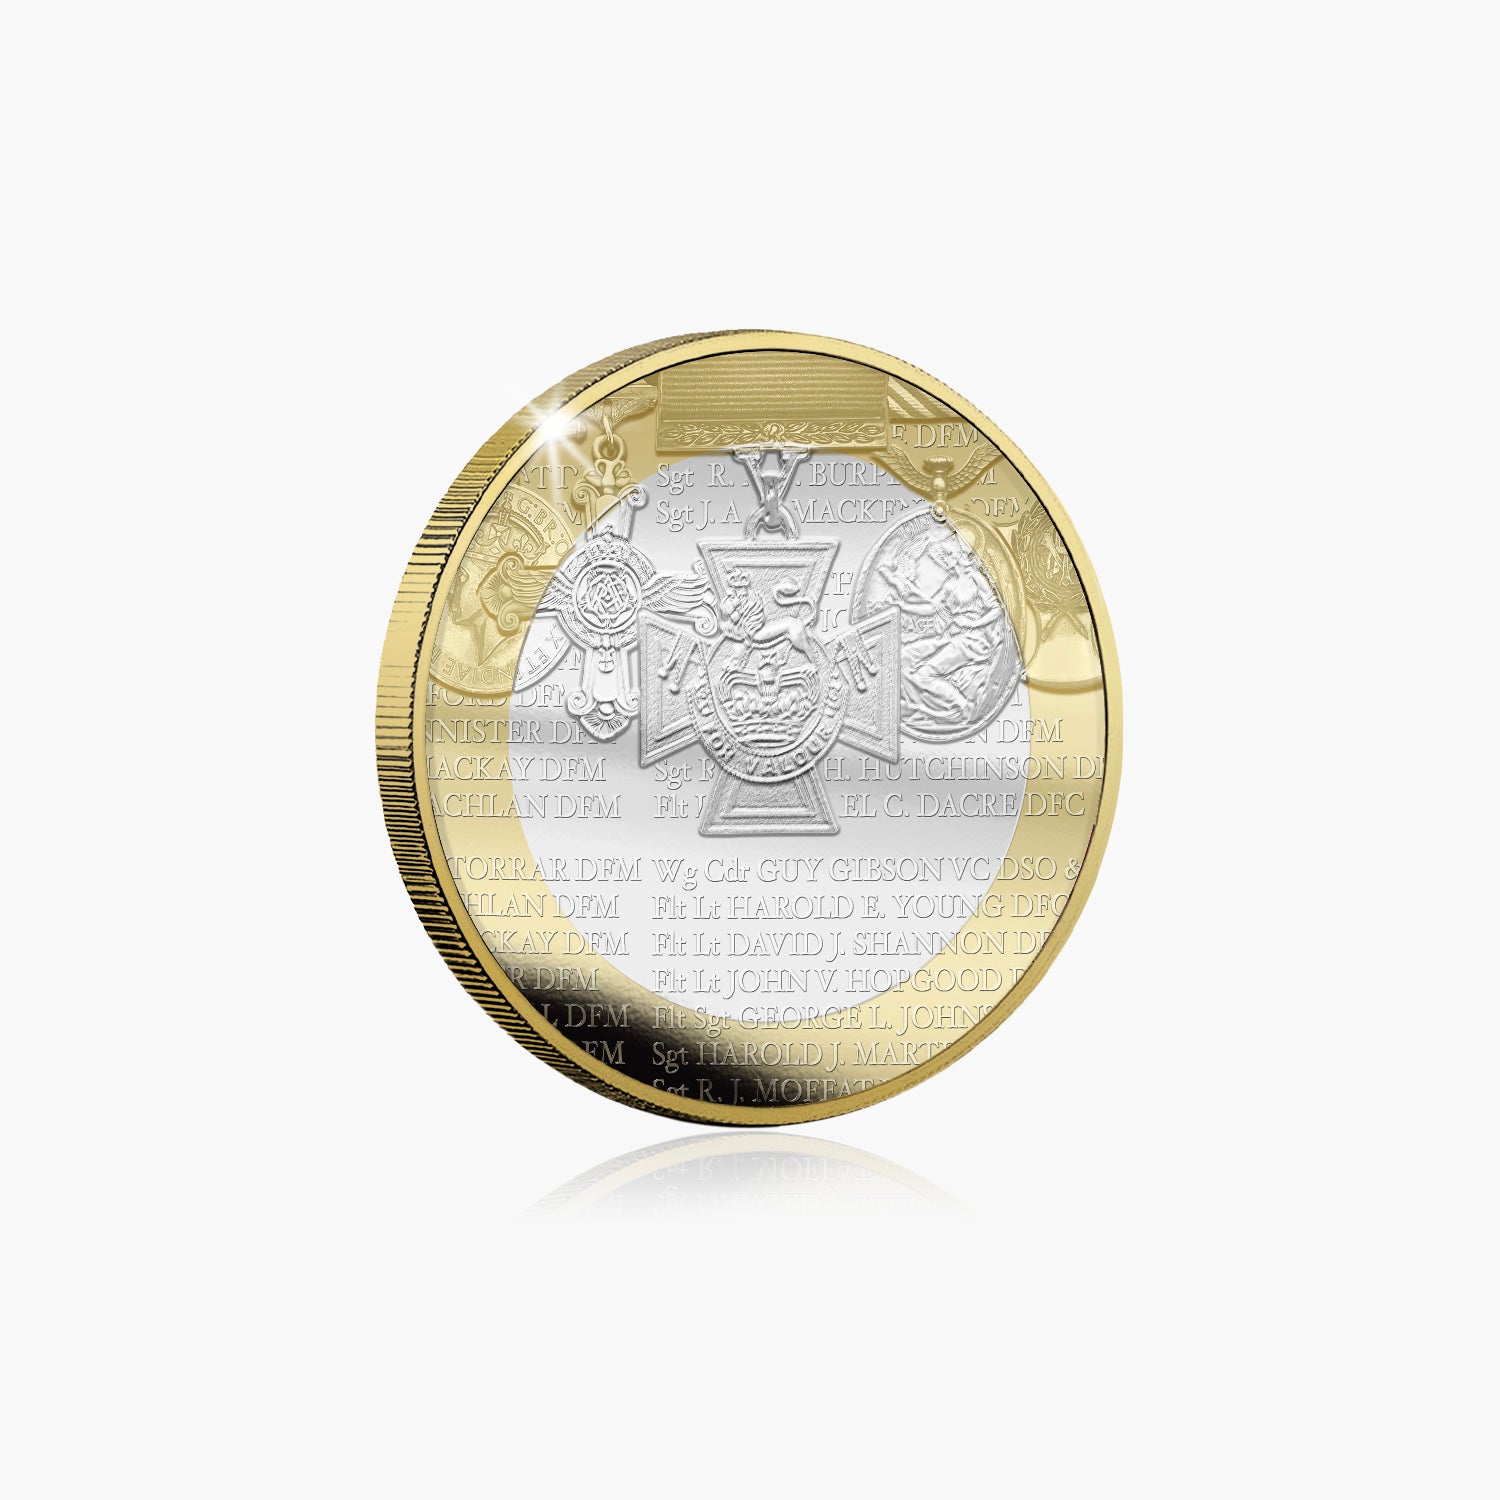 ダムバスターズ 80th - 名誉ロール £2 ブリリアント未流通コイン 2023